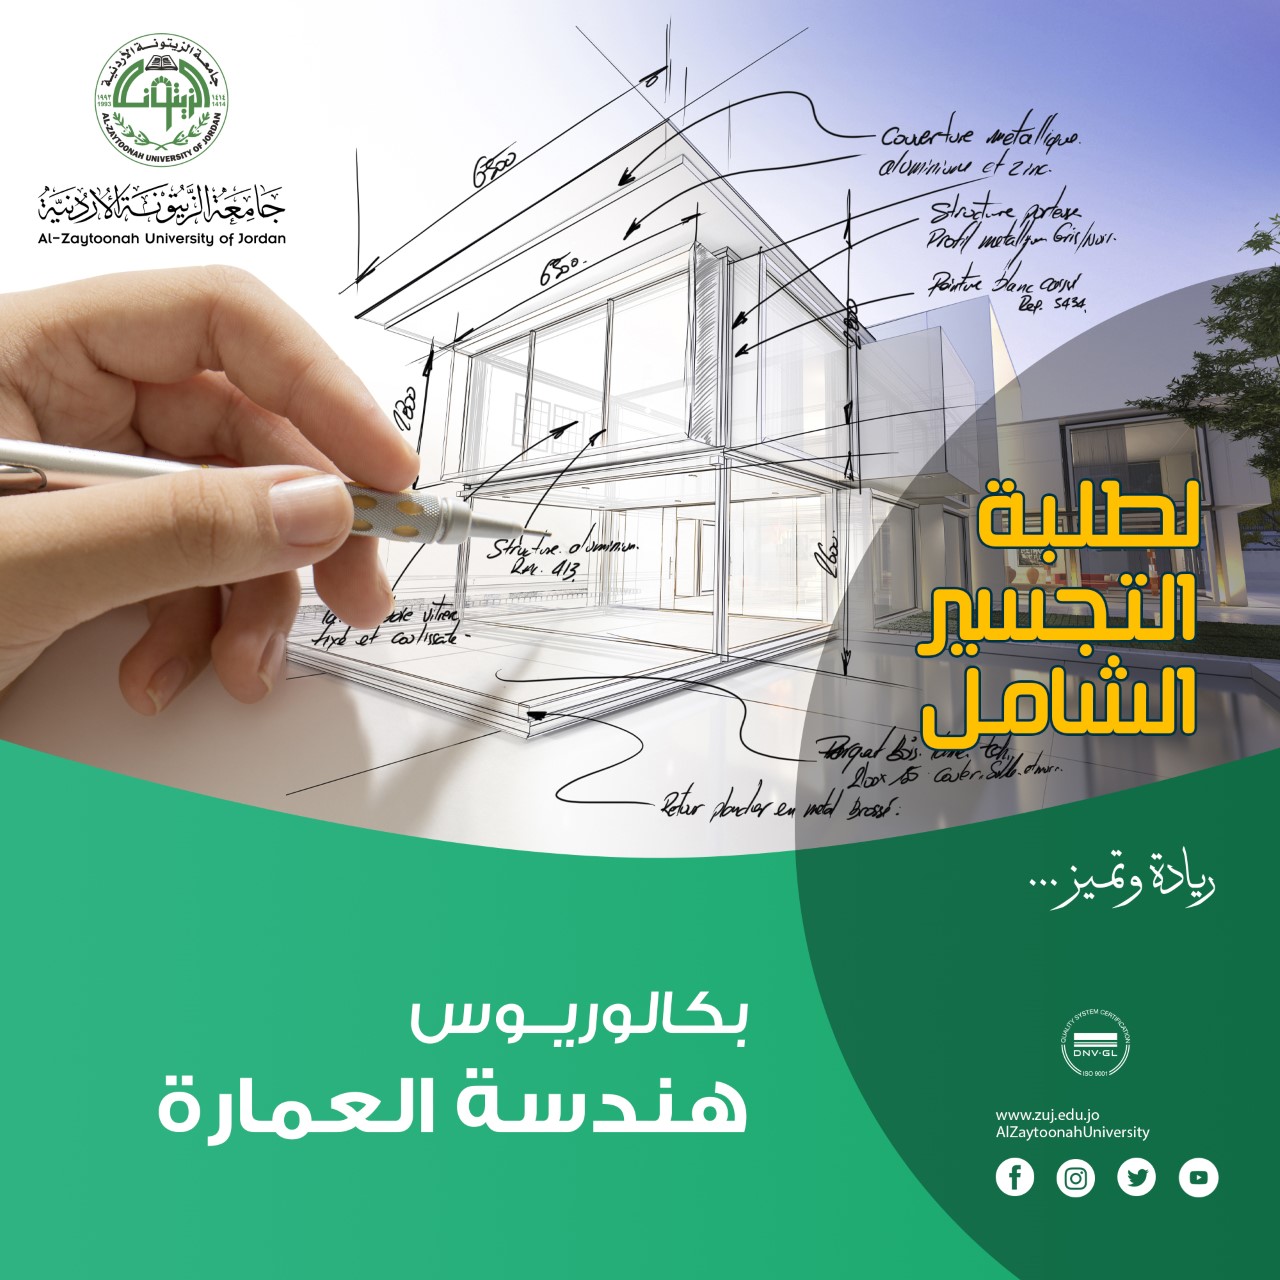 إعلان من كلية العمارة والتصميم في جامعة الزيتونة الأردنية إلى طلبة التجسير الشامل